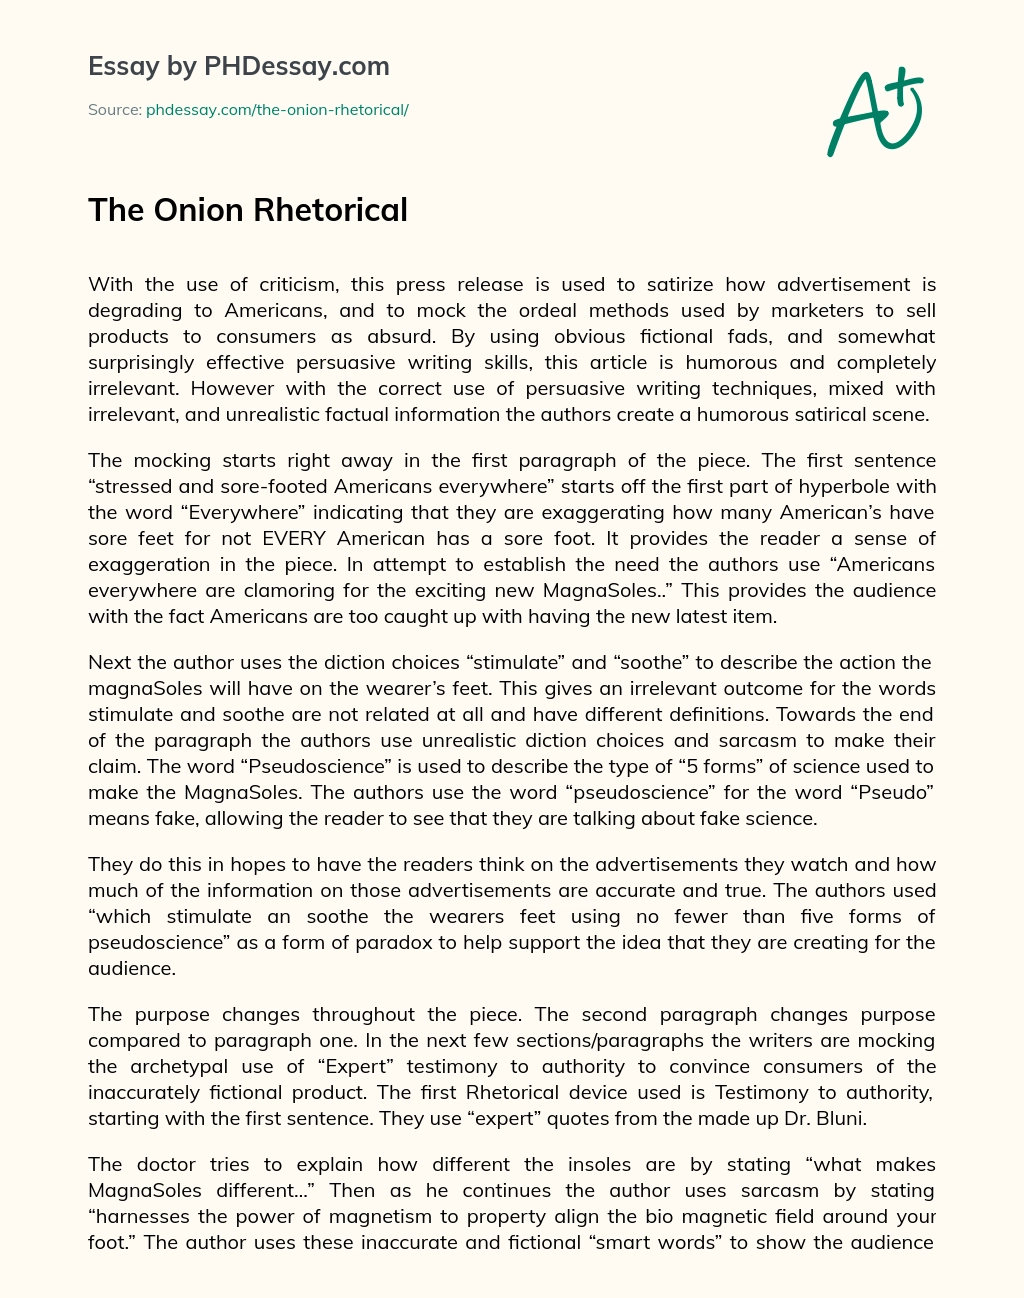 The Onion Rhetorical essay